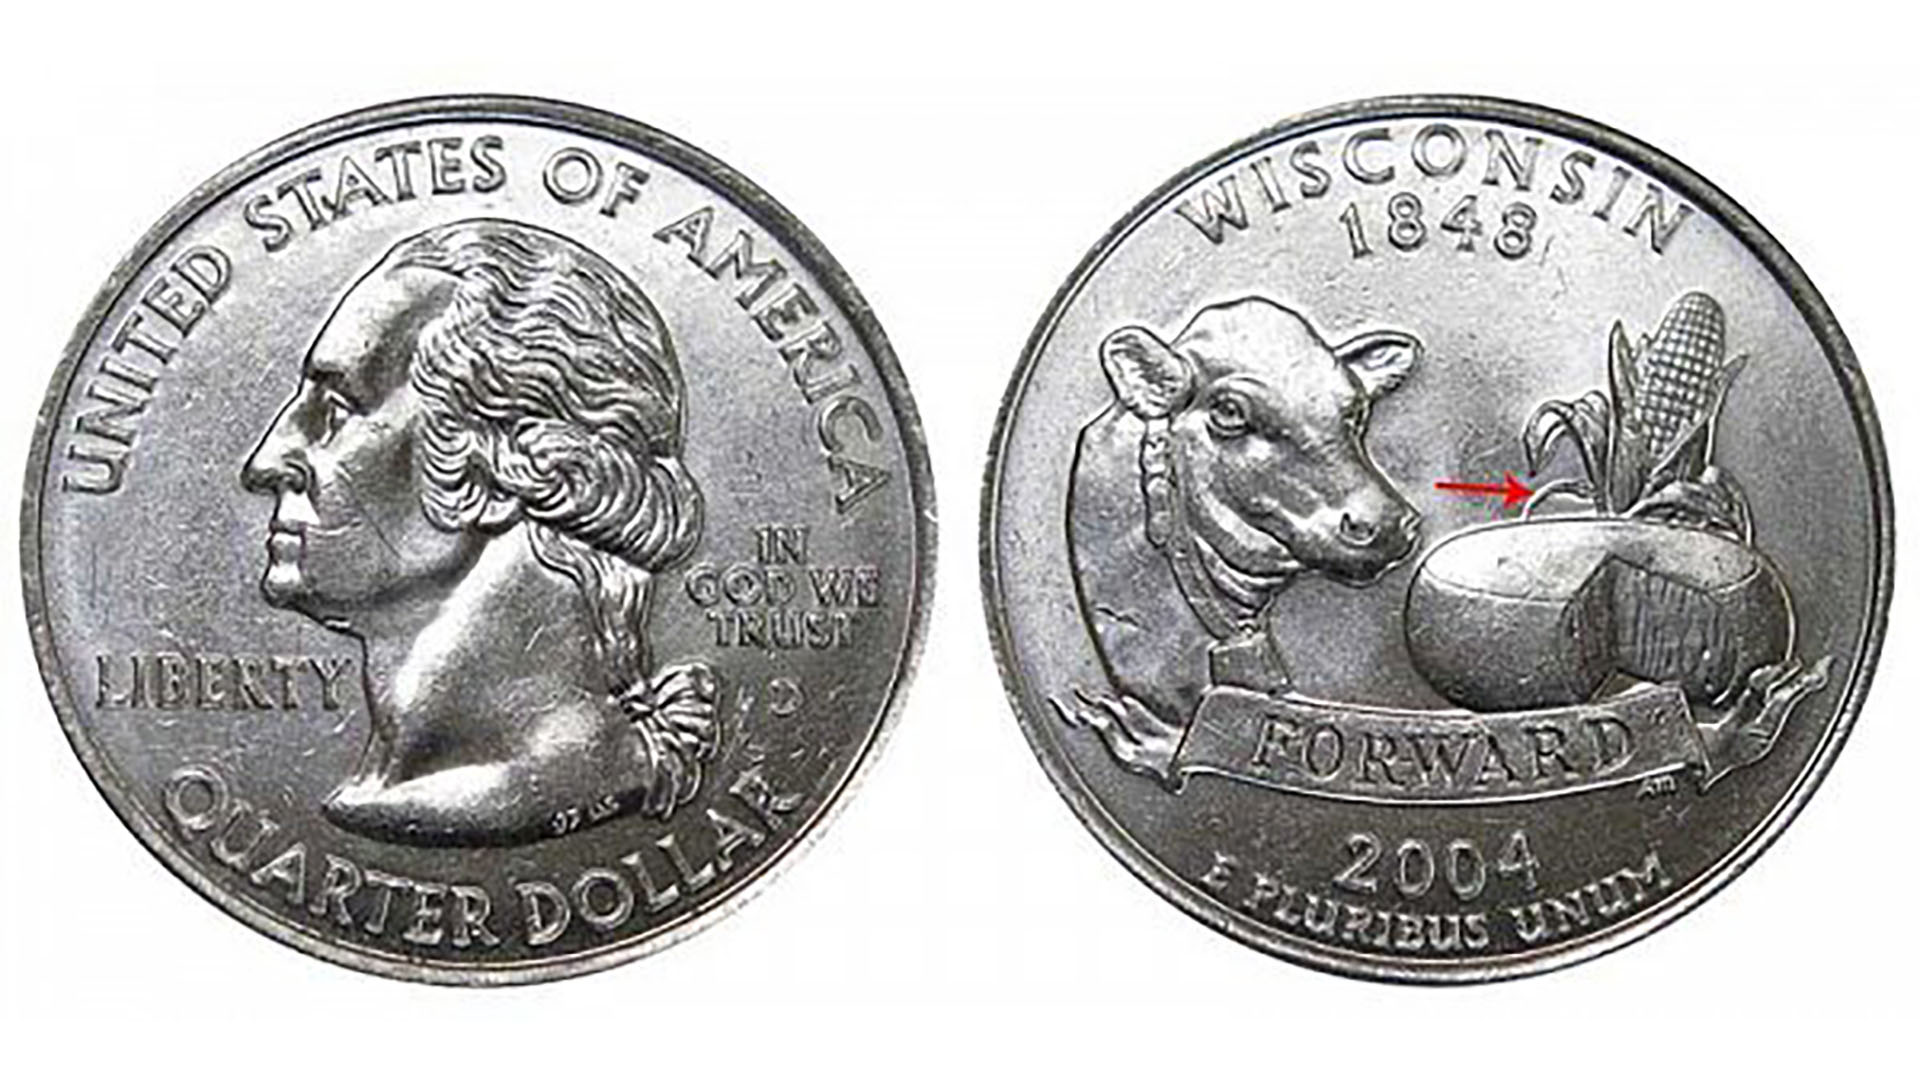 Una de las variantes de la moneda con una hoja extra. La anomalía está marcada con una flecha roja. Fuente: usacoinbook.com